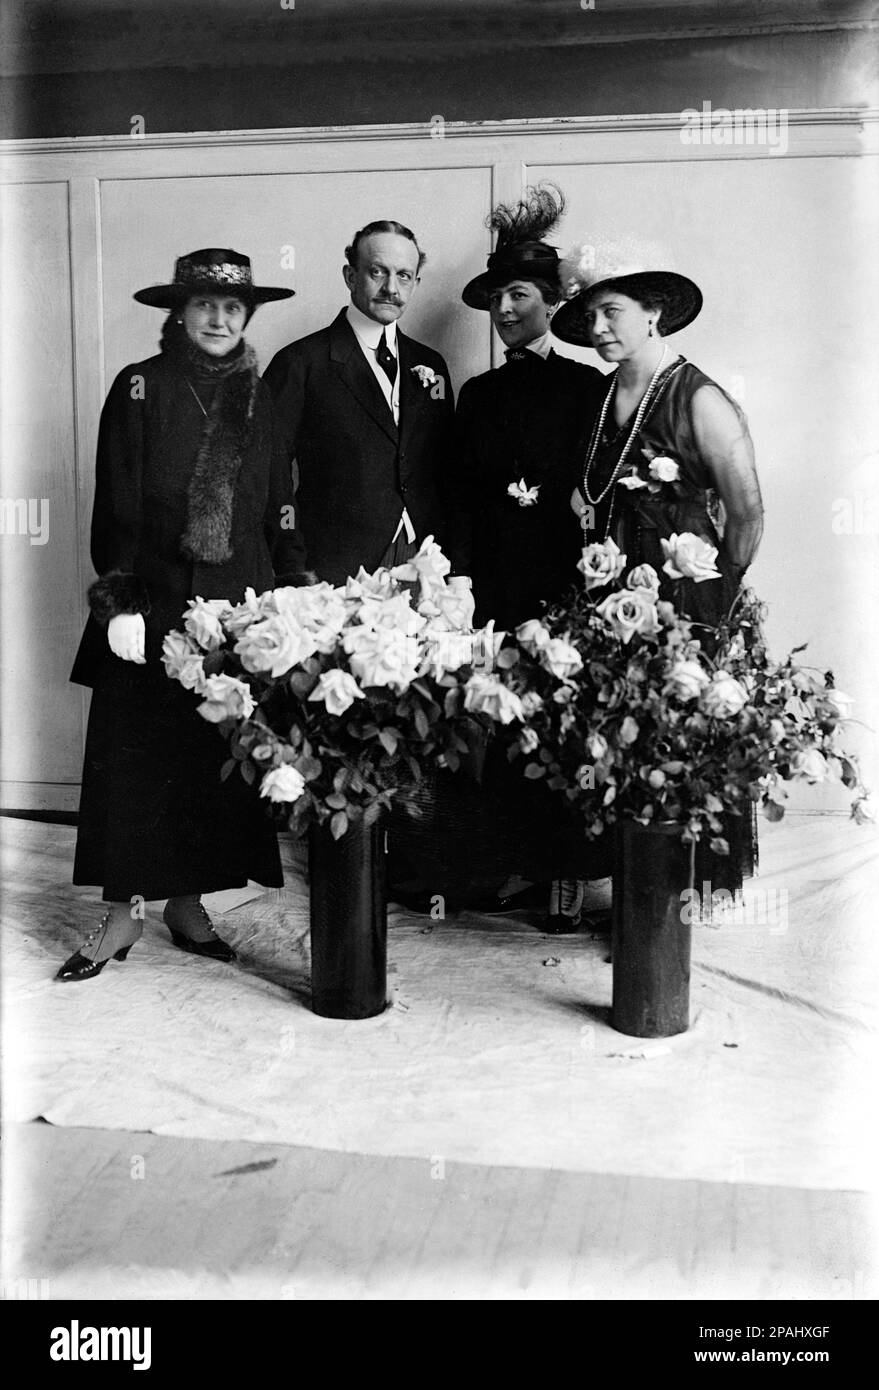 1917 CA , Wahington , USA : l'allemand Johann Heinrich Andreas Hermann Albrecht , Graf von BERNSTORFF ( Londres 1862 - Genf 1939 ) . En photo officielle portrait avec (de gauche à droite) Mme C. HAUGE , Mme Joseph STRANSKY et Mme H. REISINGER - ROYALTIES - NOBLESSE - Nobilta' - BELLE EPOQUE - chicanes - moustache - collier - cravate - Cravatta - Conte - Comte Bernstorff - SPIA - SPIONAGGIO - fiore - fiori - fleurs - rosa - roses - FLORICOLTURA - concours - concorso --- Archivio GBB Banque D'Images